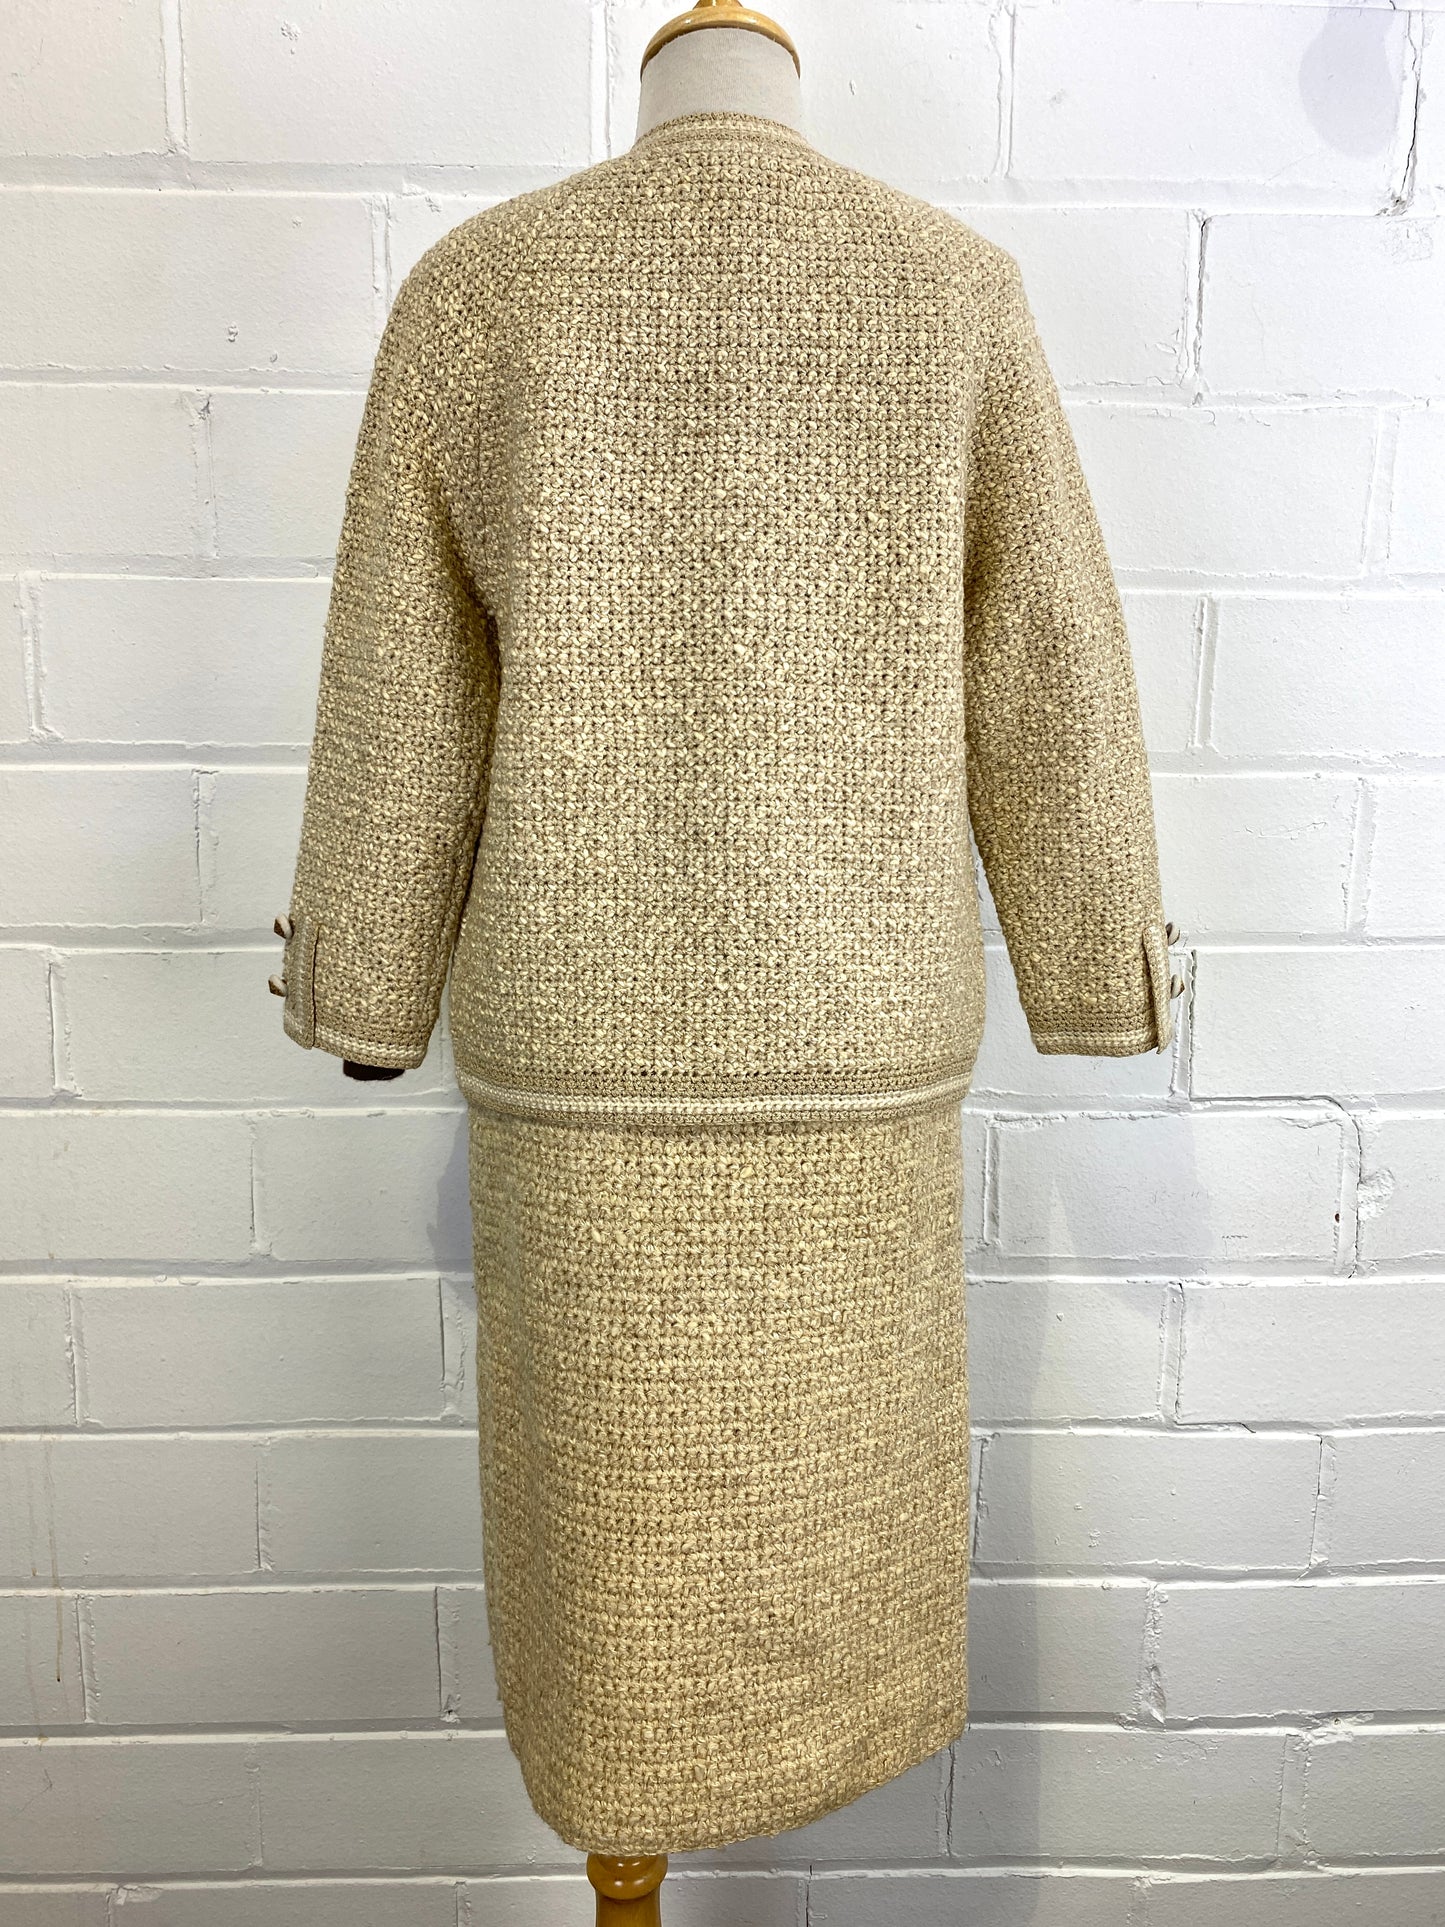 1960s Deadstock Wool Skirt Suit Designer Vintage Tweed Jacket 